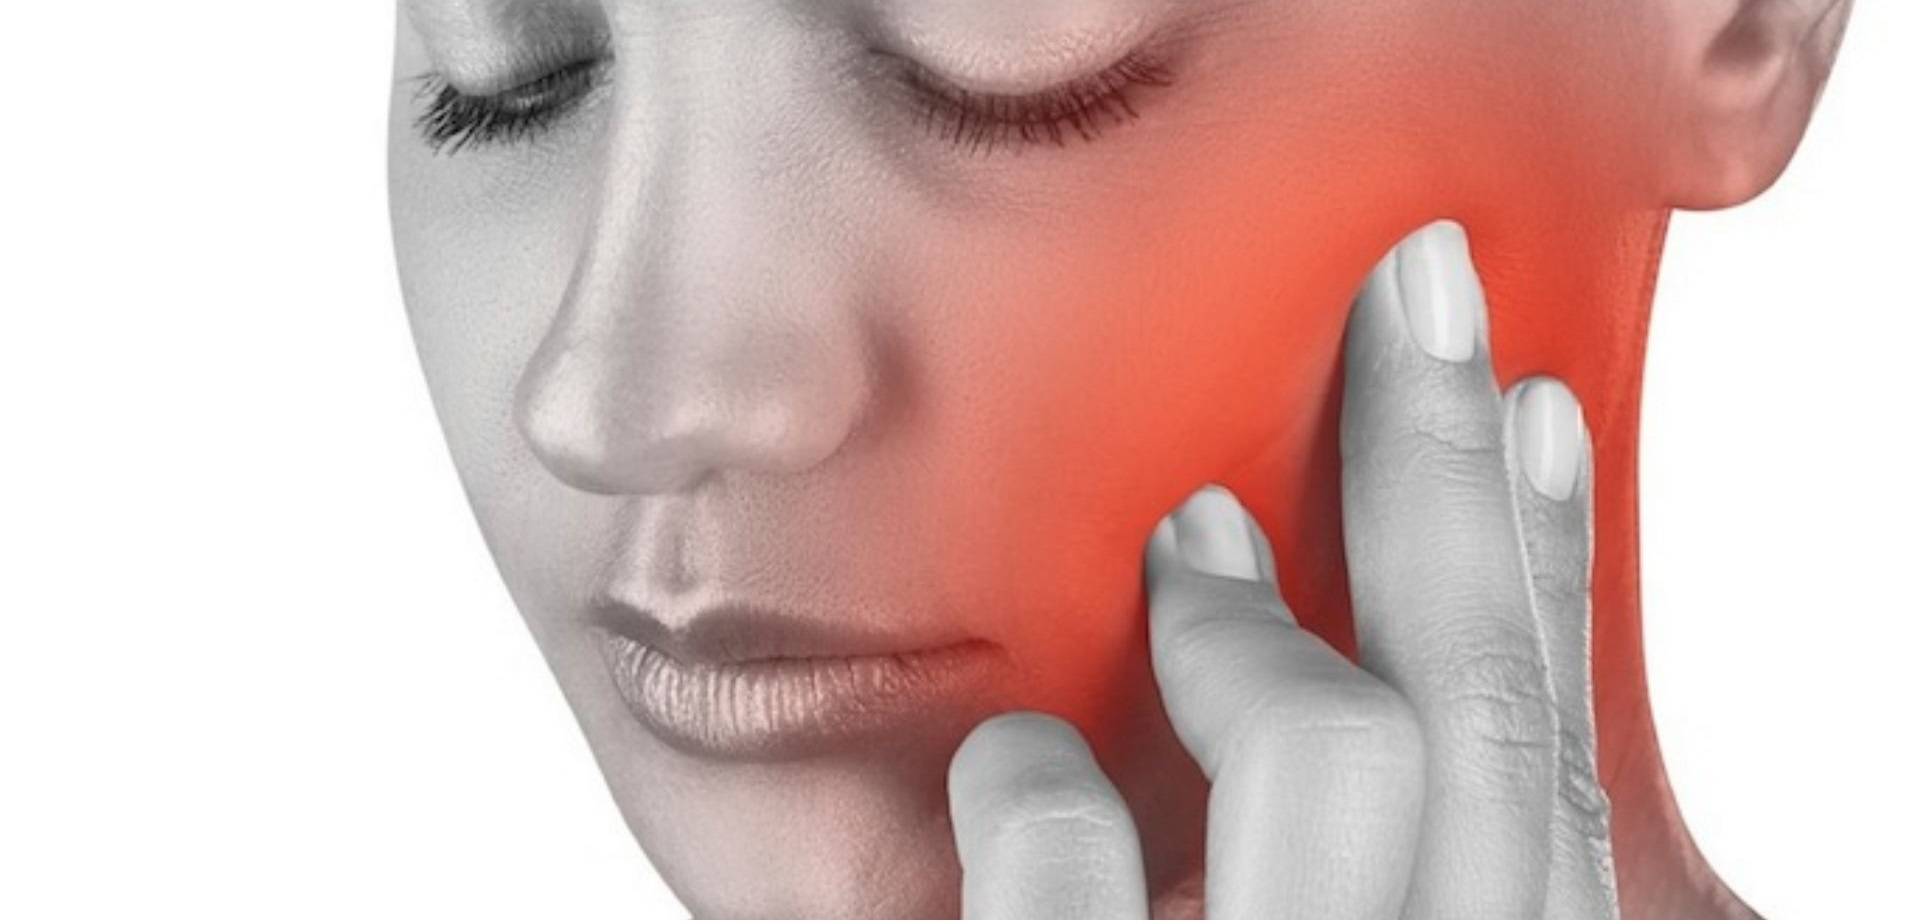 Щелкает челюсть при открытии рта – причины и лечение